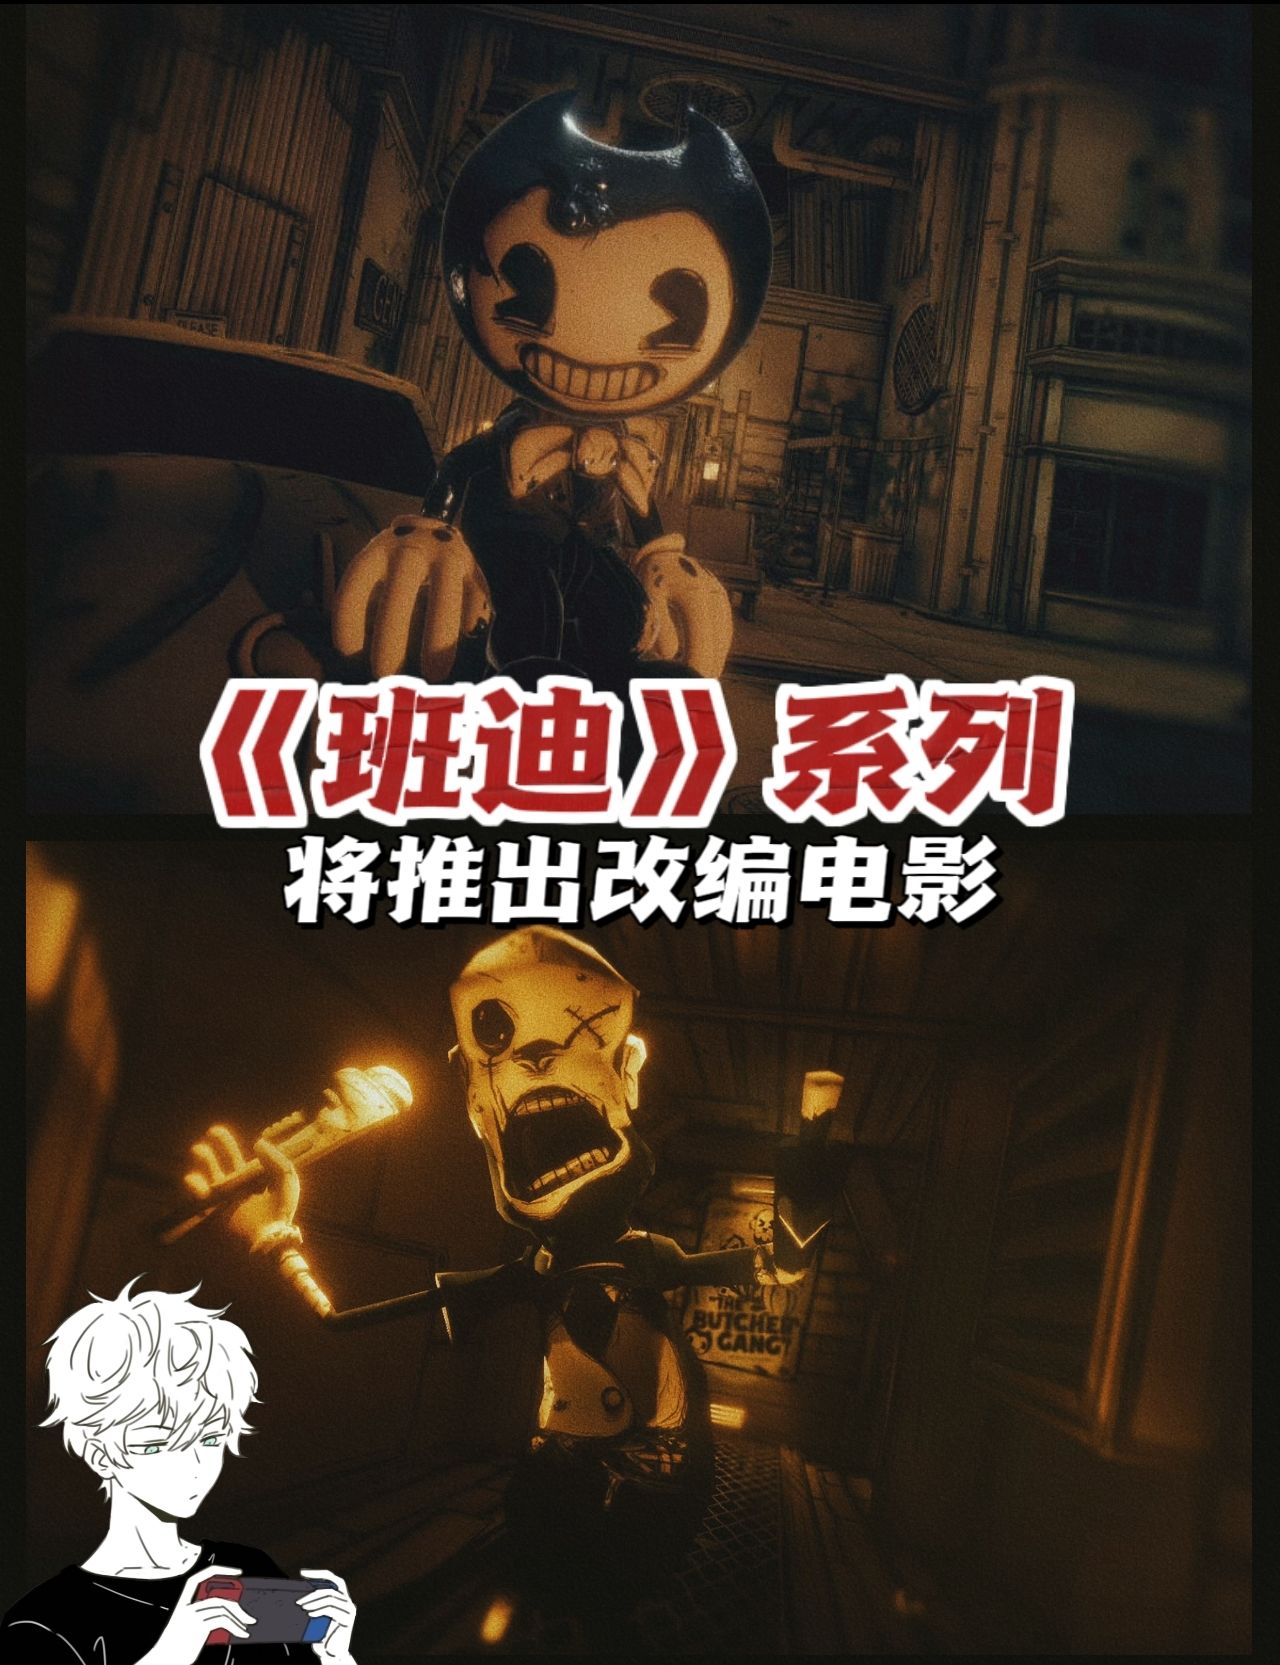 【PC游戏】恐怖生存游戏《班迪》系列将推出改编电影